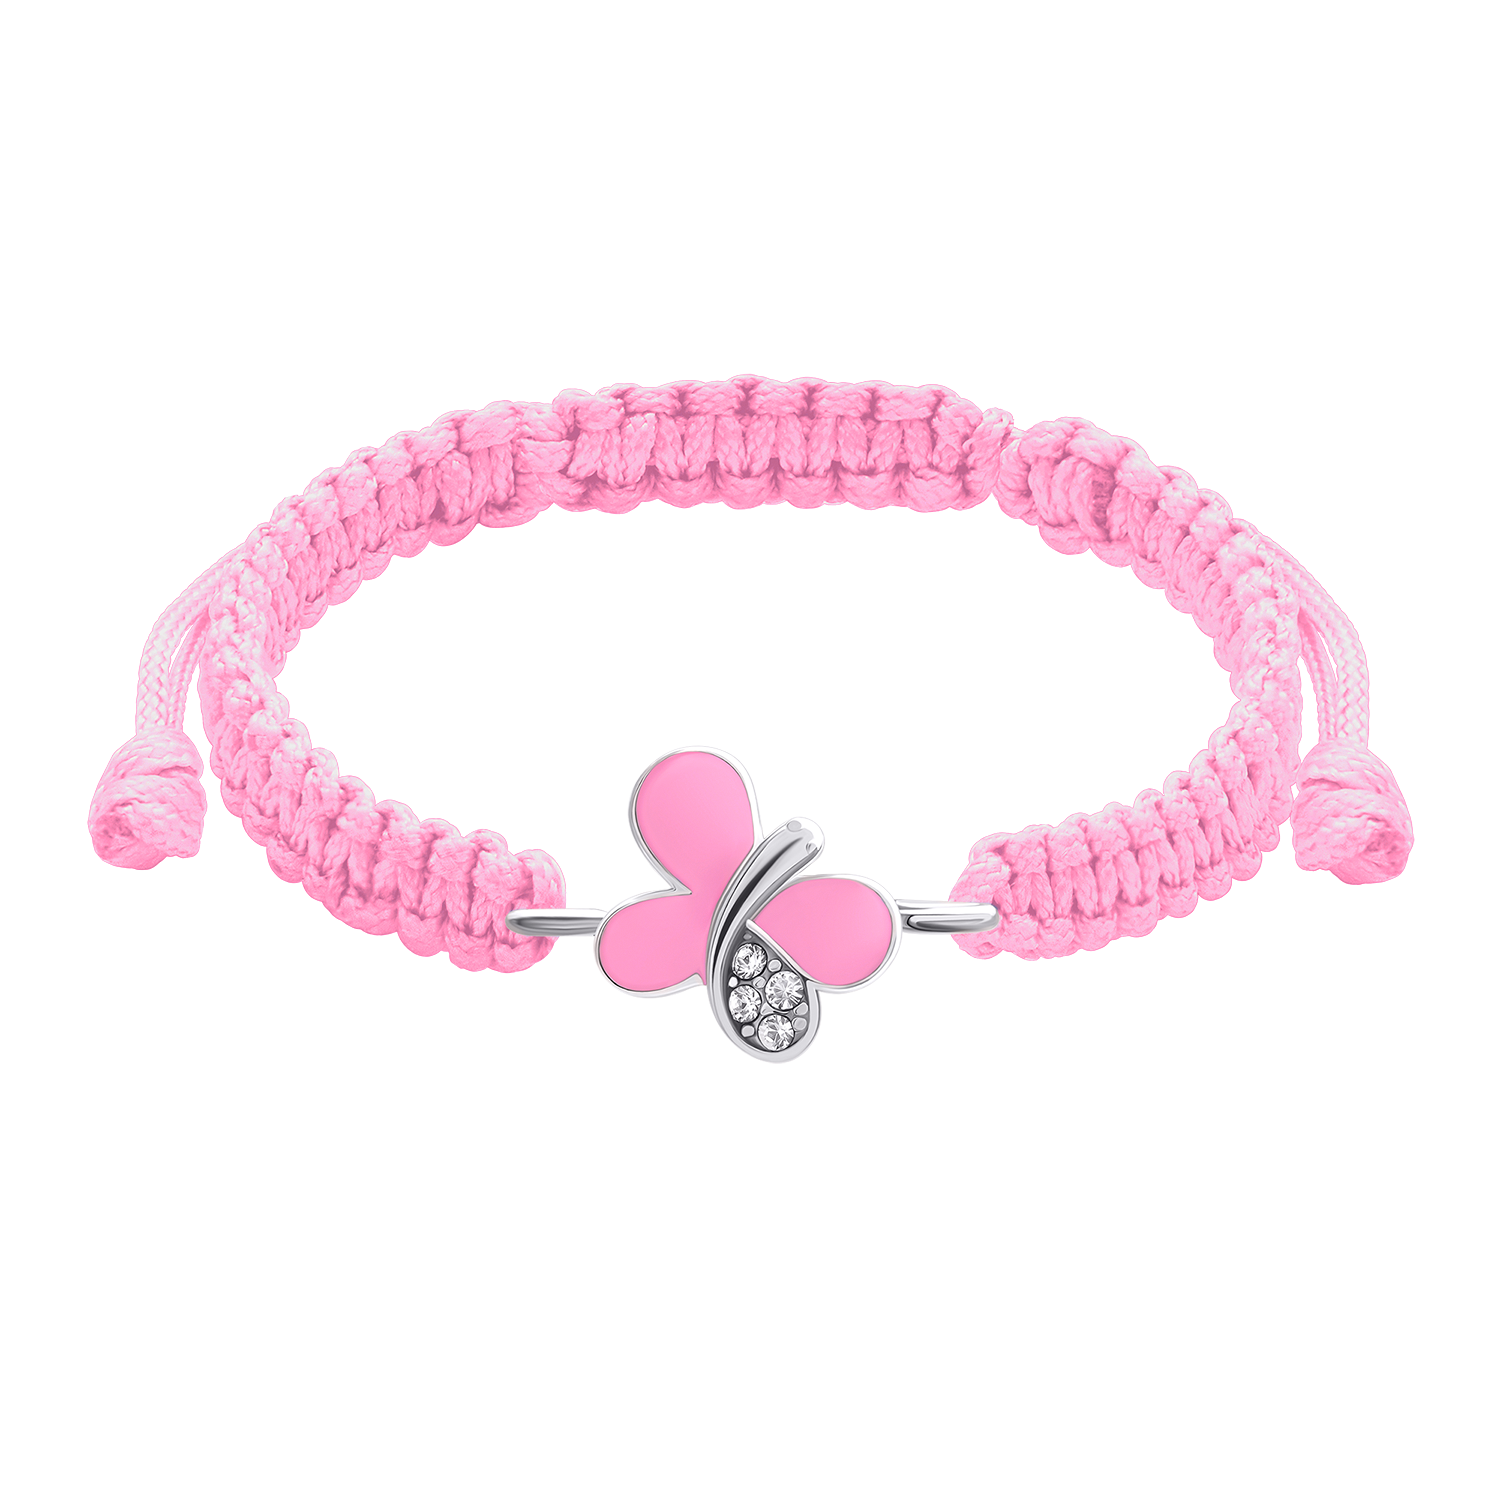 Geflochtenes Armband Glänzender Schmetterling mit rosa Emaille und Zirkonia